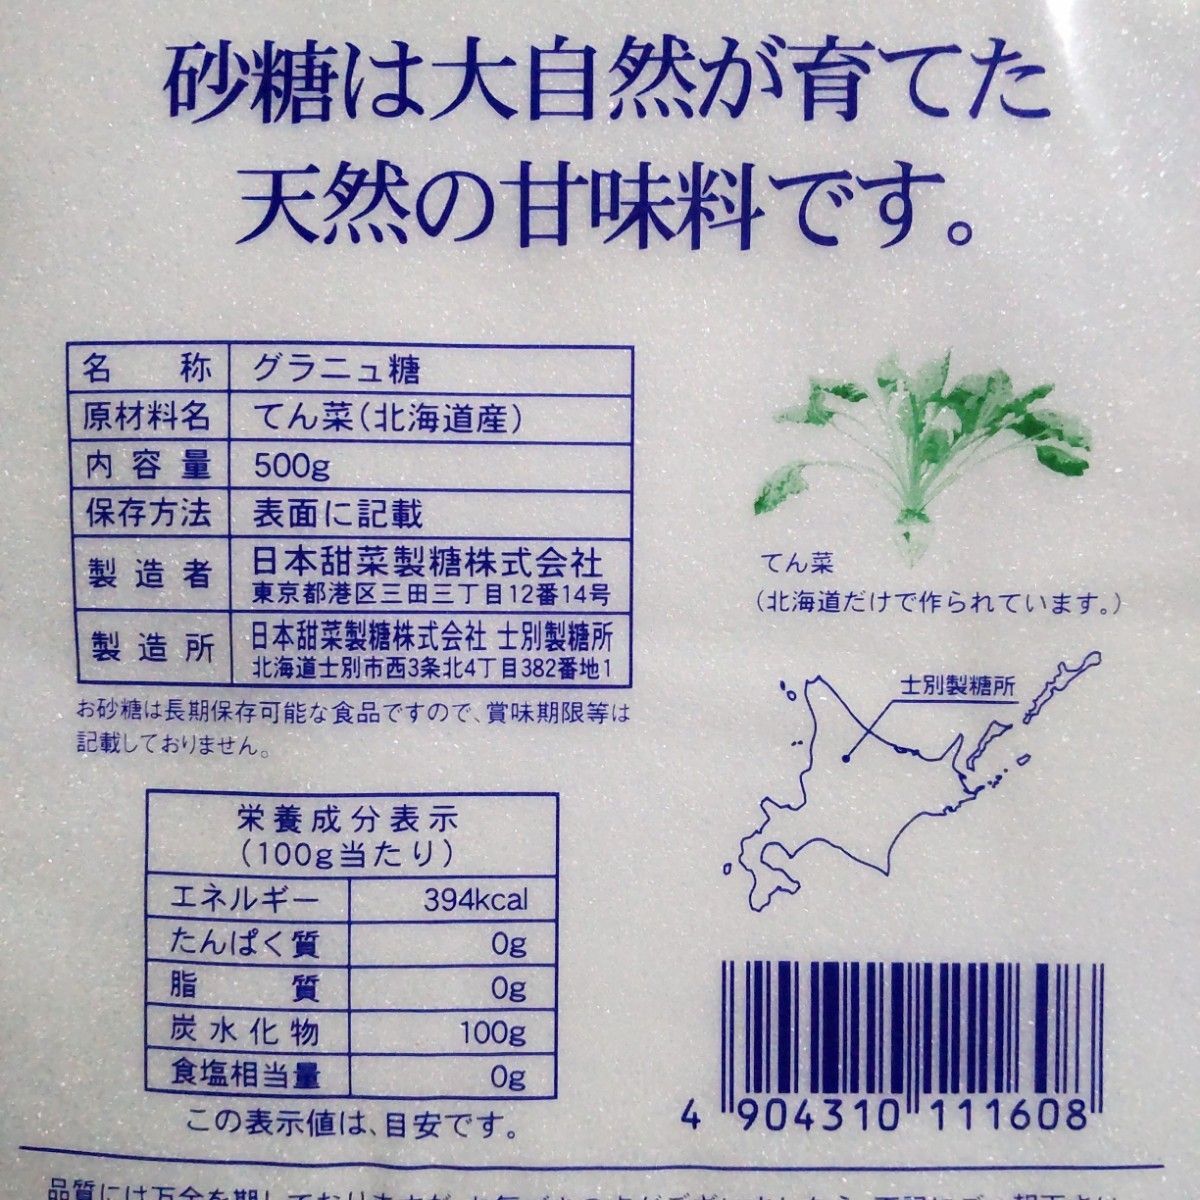 北海道産 グラニュー糖 500g×2袋